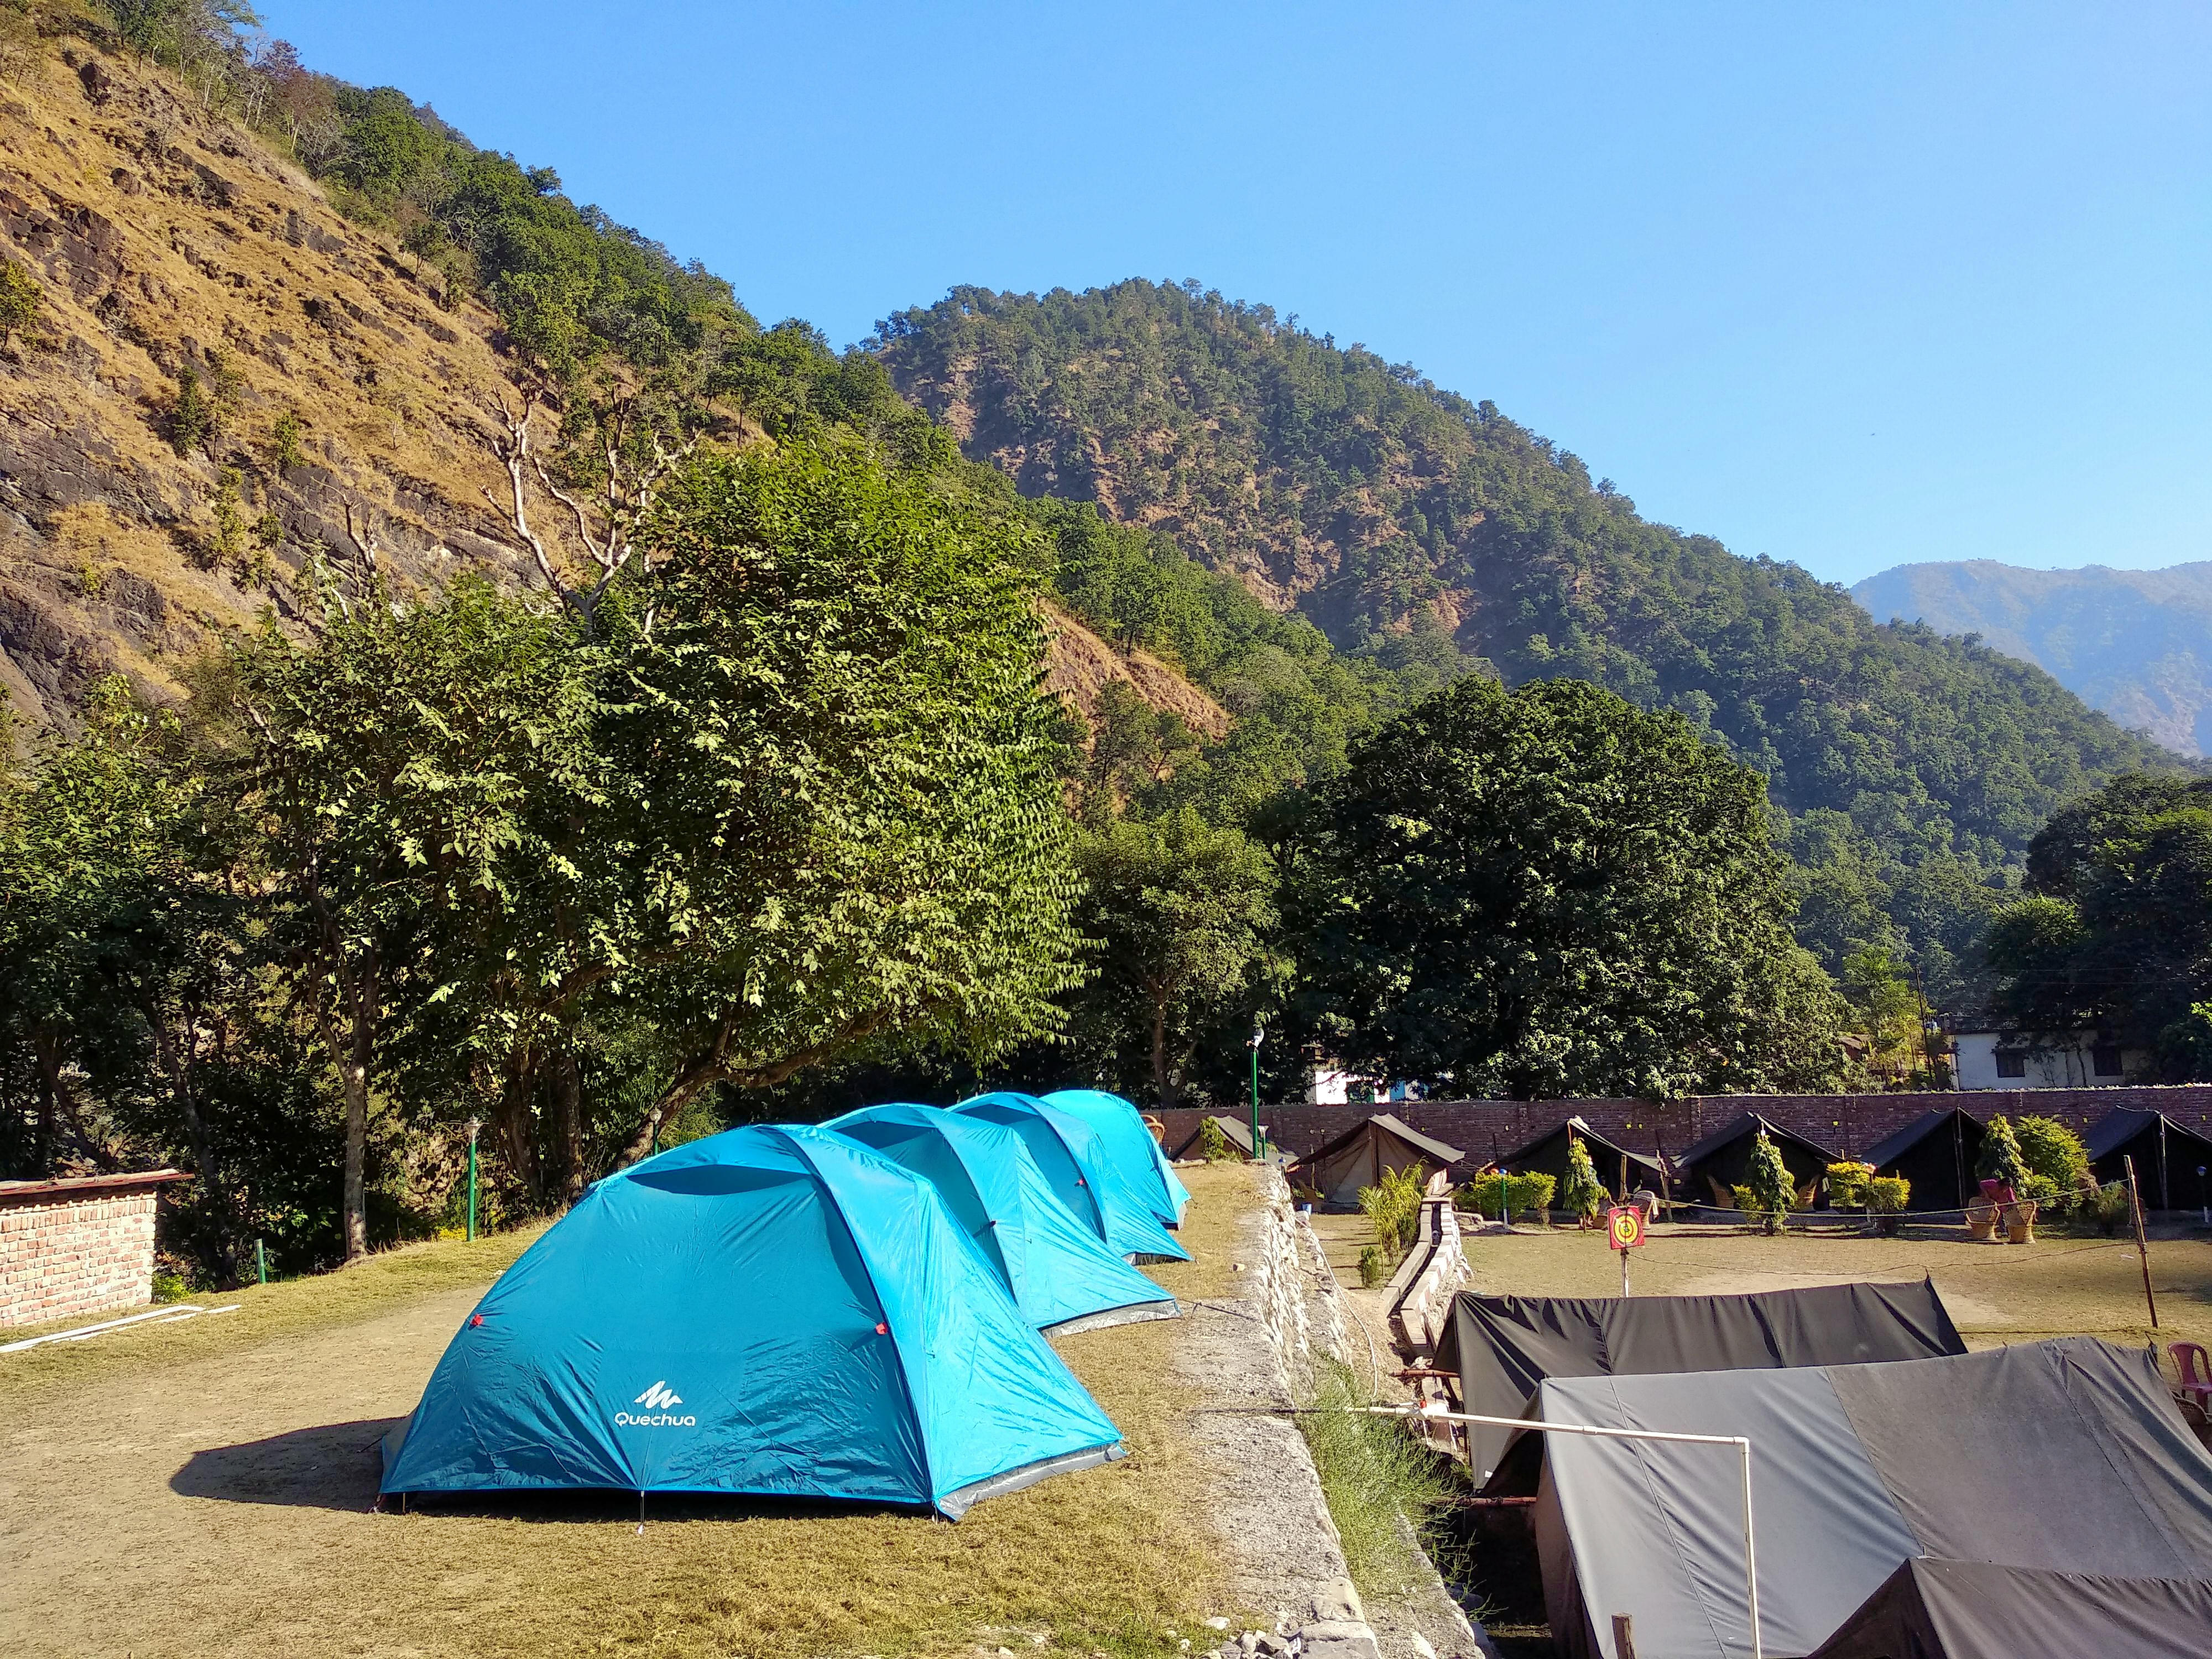 Camping in Rishikesh near Ganga